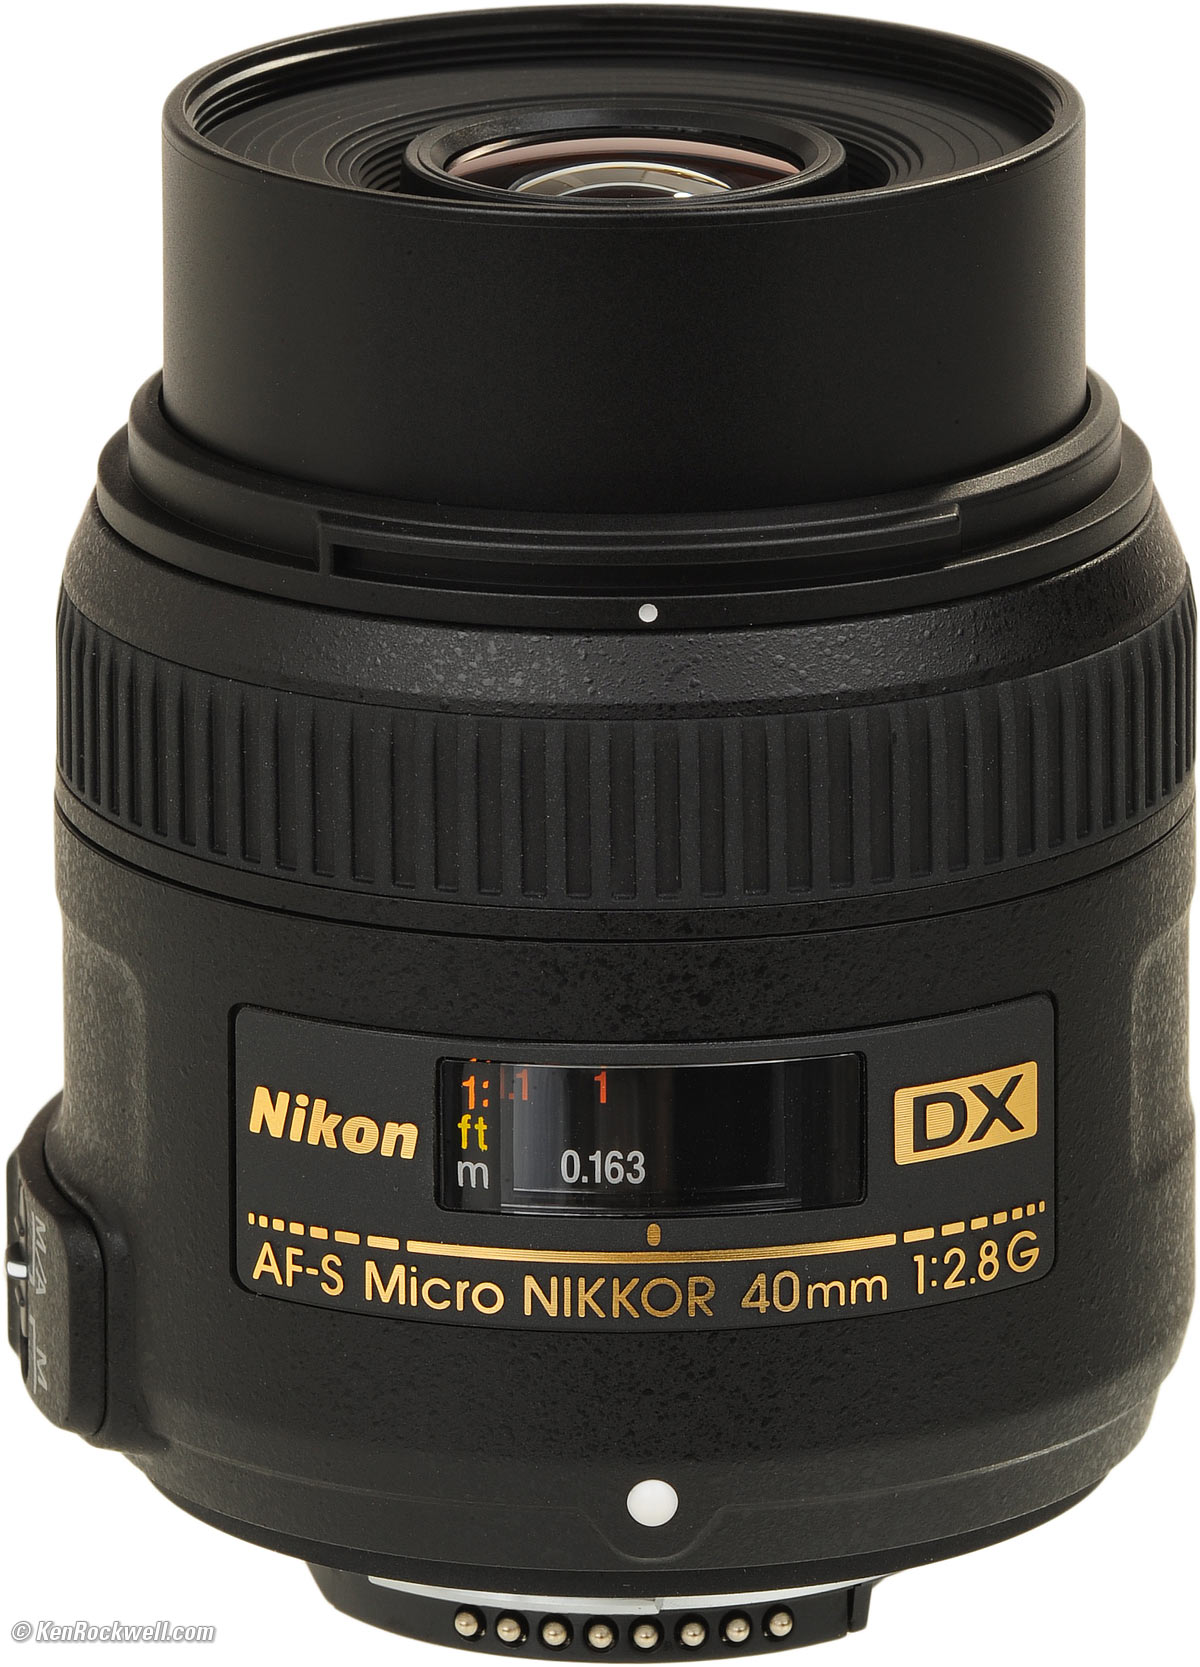 AF-S DX Micro NIKKOR 40mm f/ 2.8G